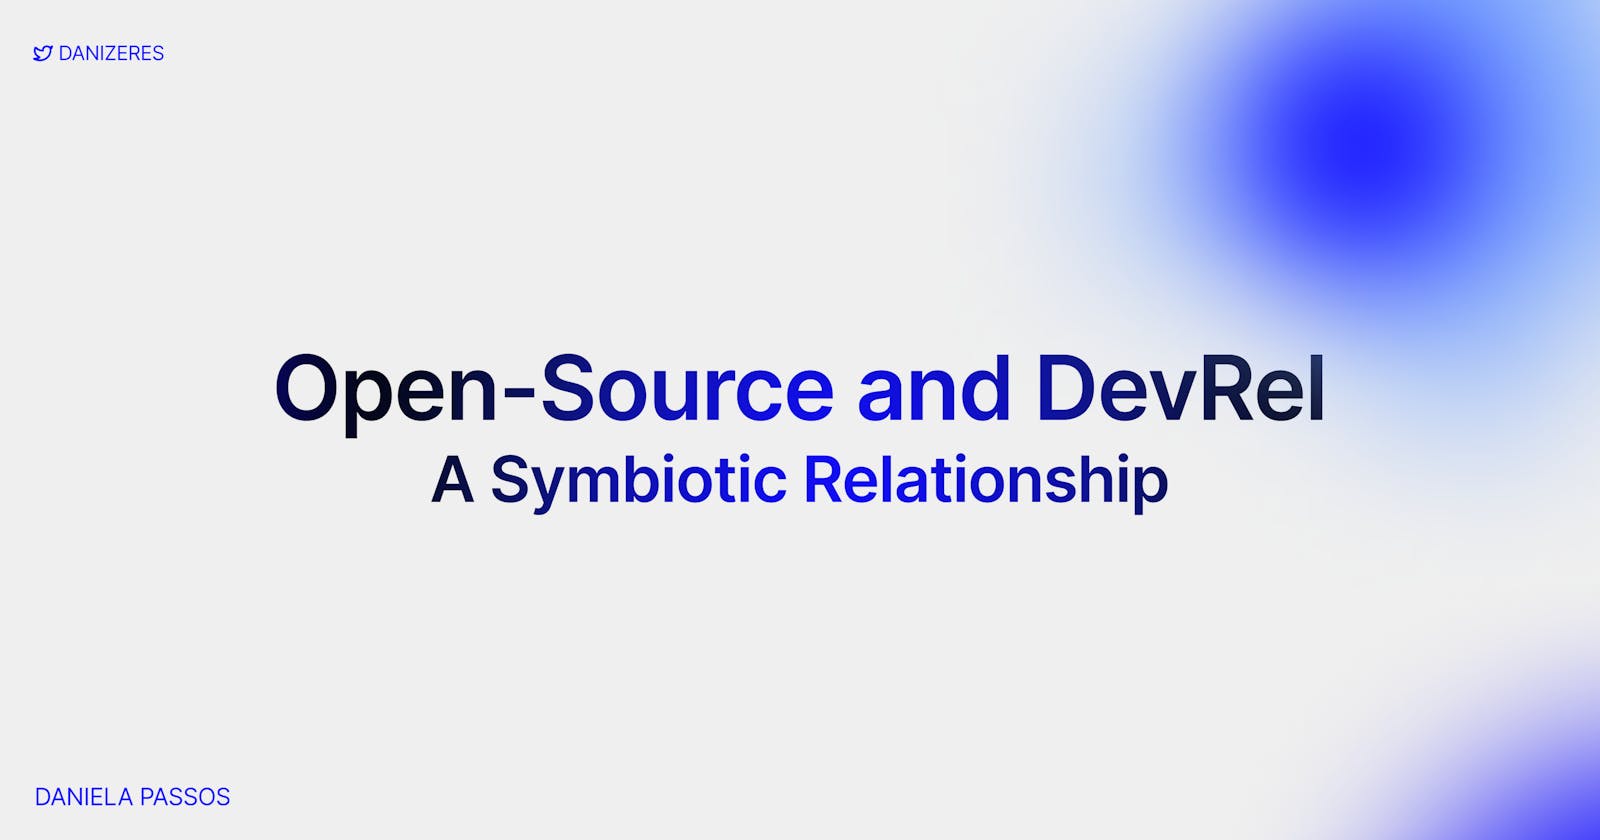 Open-source and DevRel